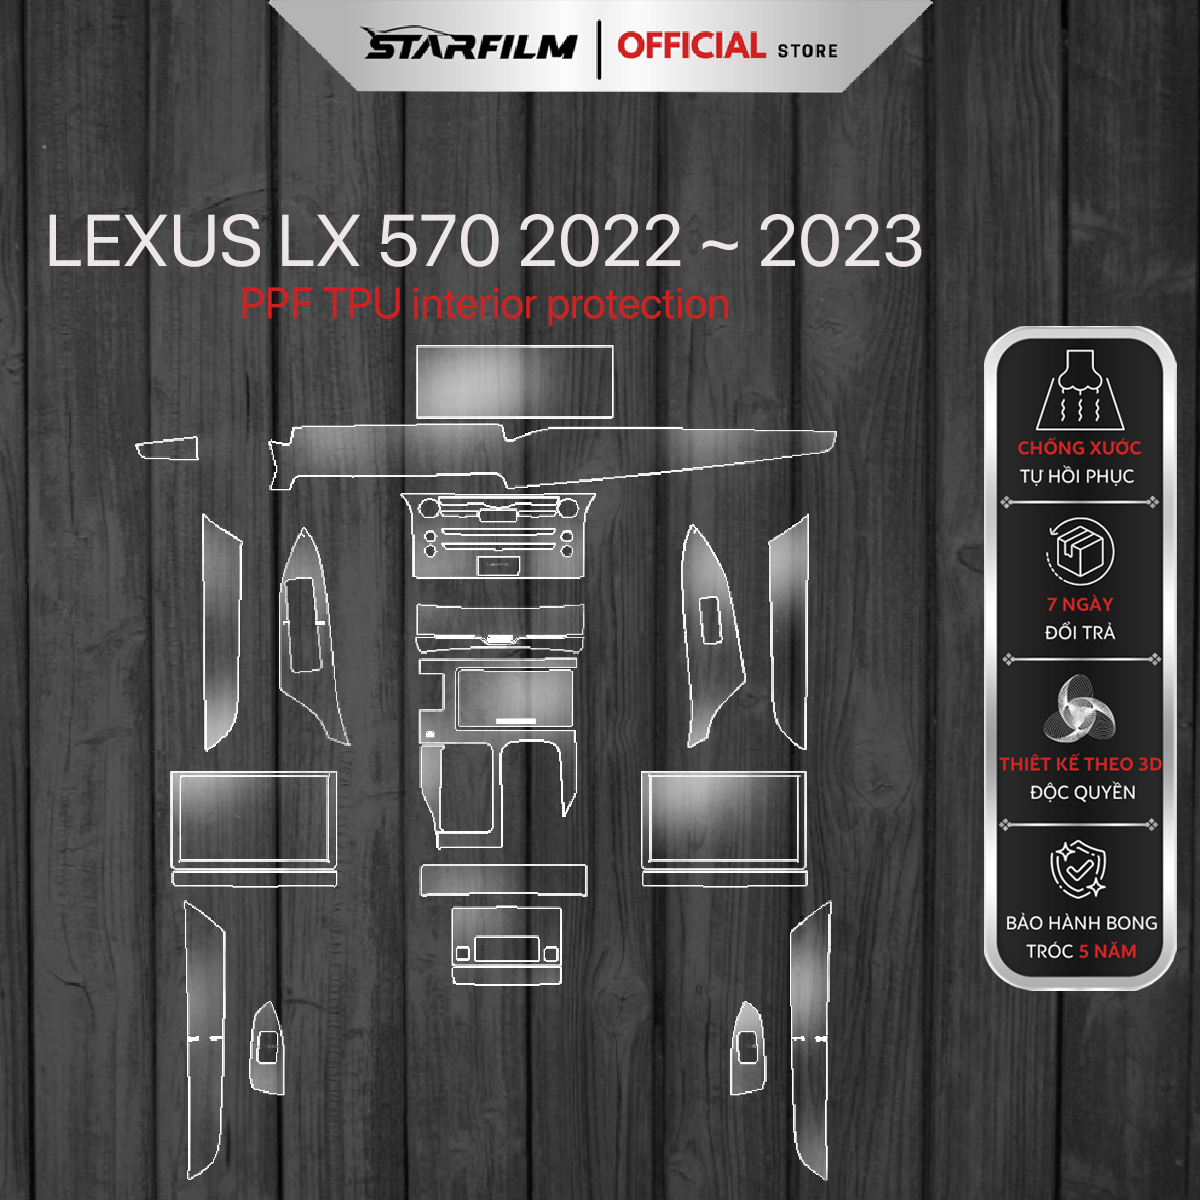 Lexus LX570 2023 PPF TPU nội thất chống xước tự hồi phục